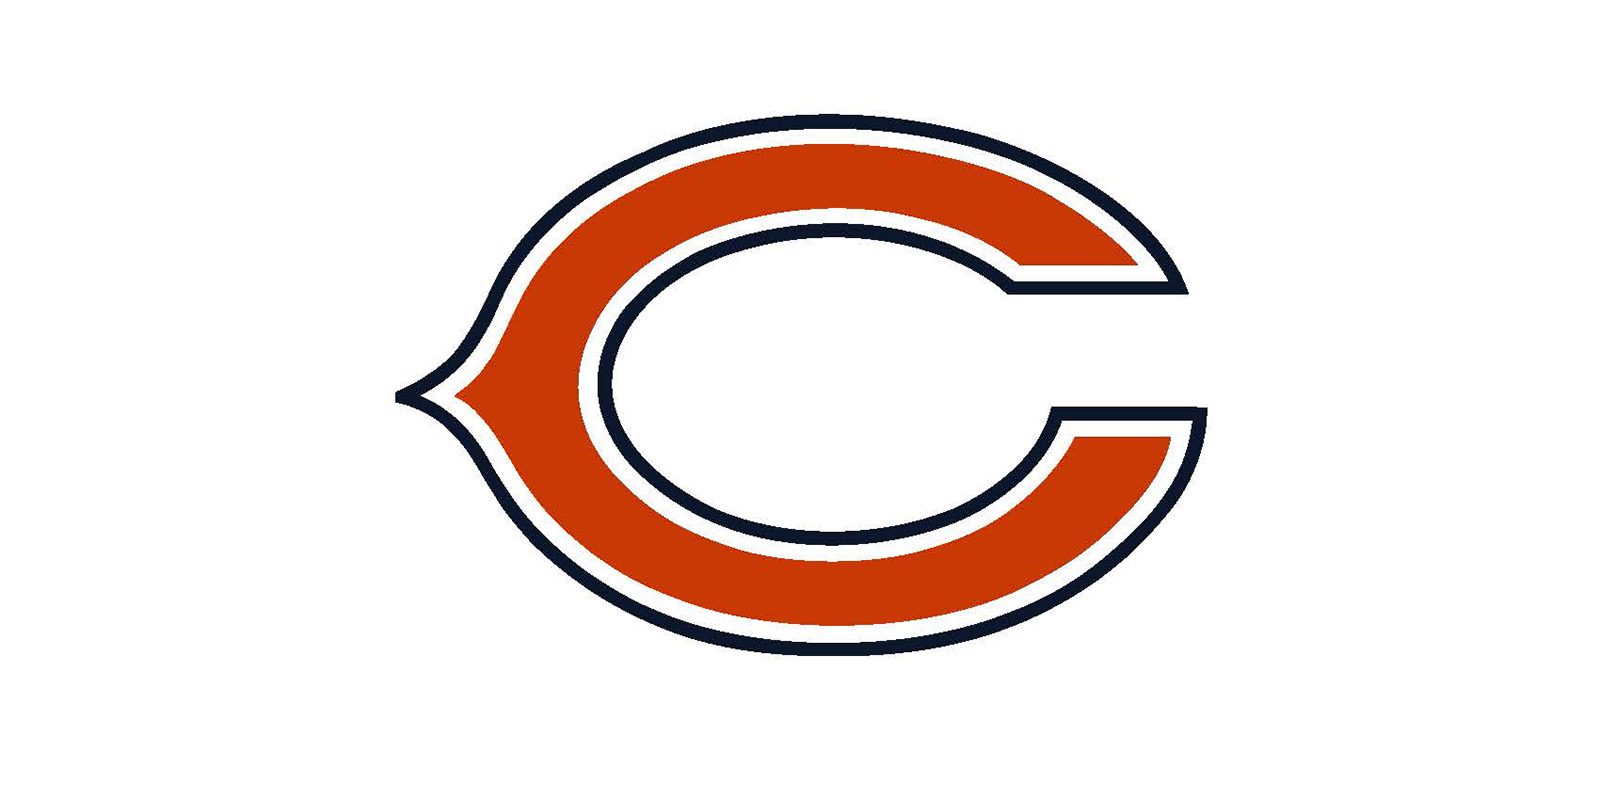 Olivet_Chicago Bears_Training Camp 2018_Web.jpg